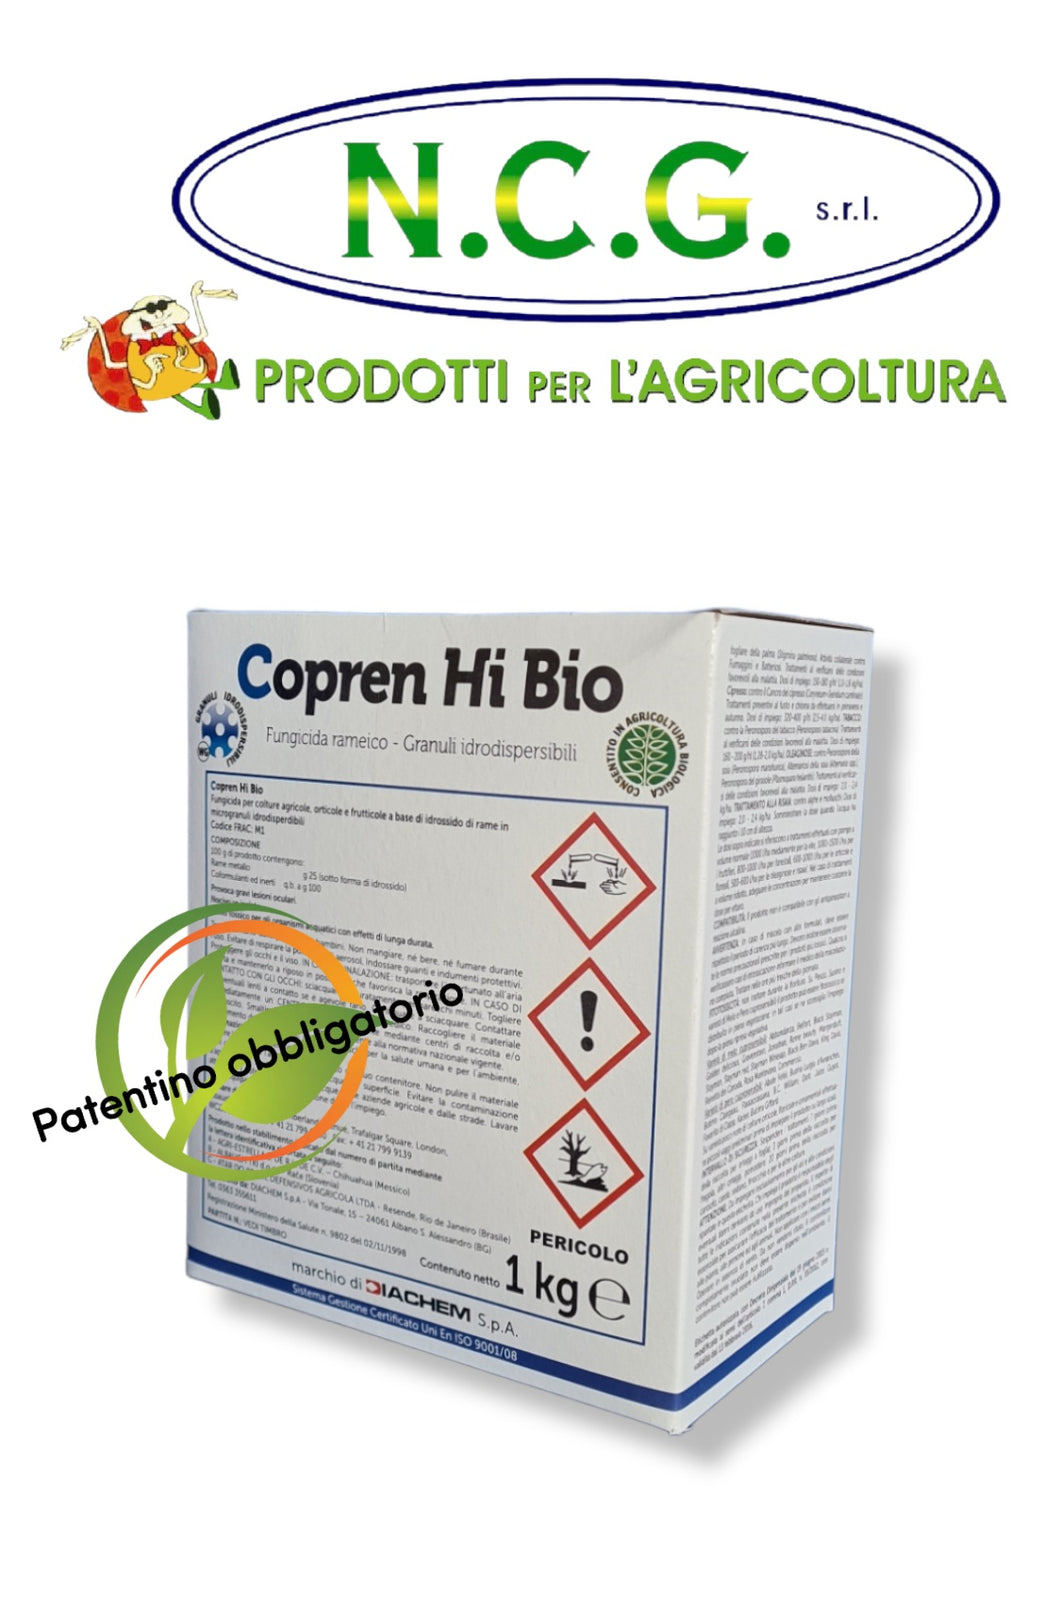 Copre- Hi bio da kg 1 Diachem fungicida rameico in granuli idrodispersibili